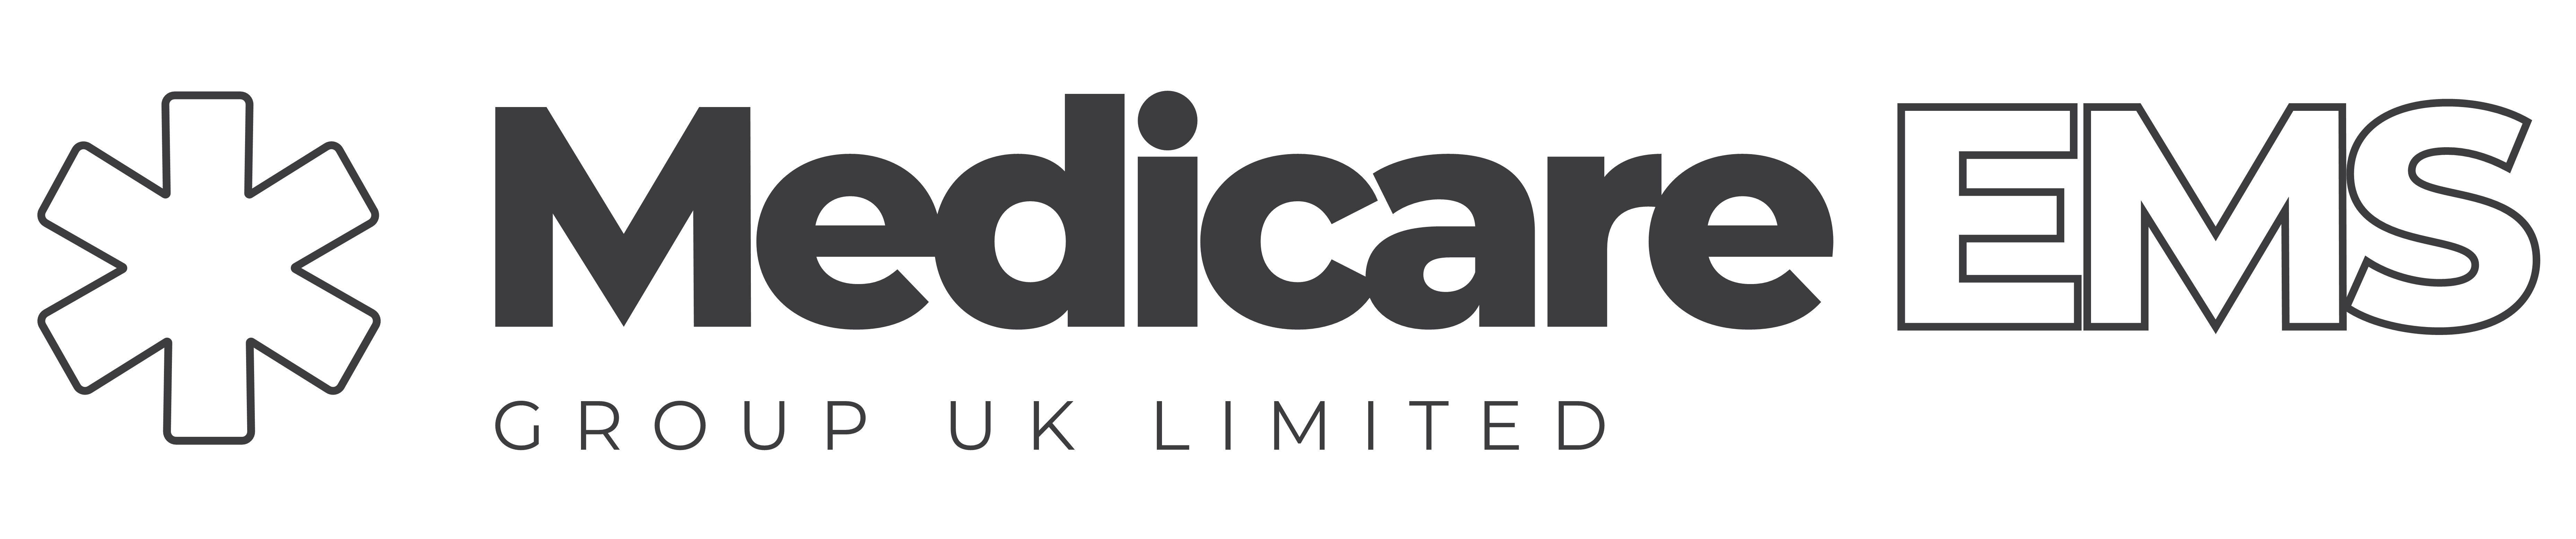 Medicare EMS Group UK Limited